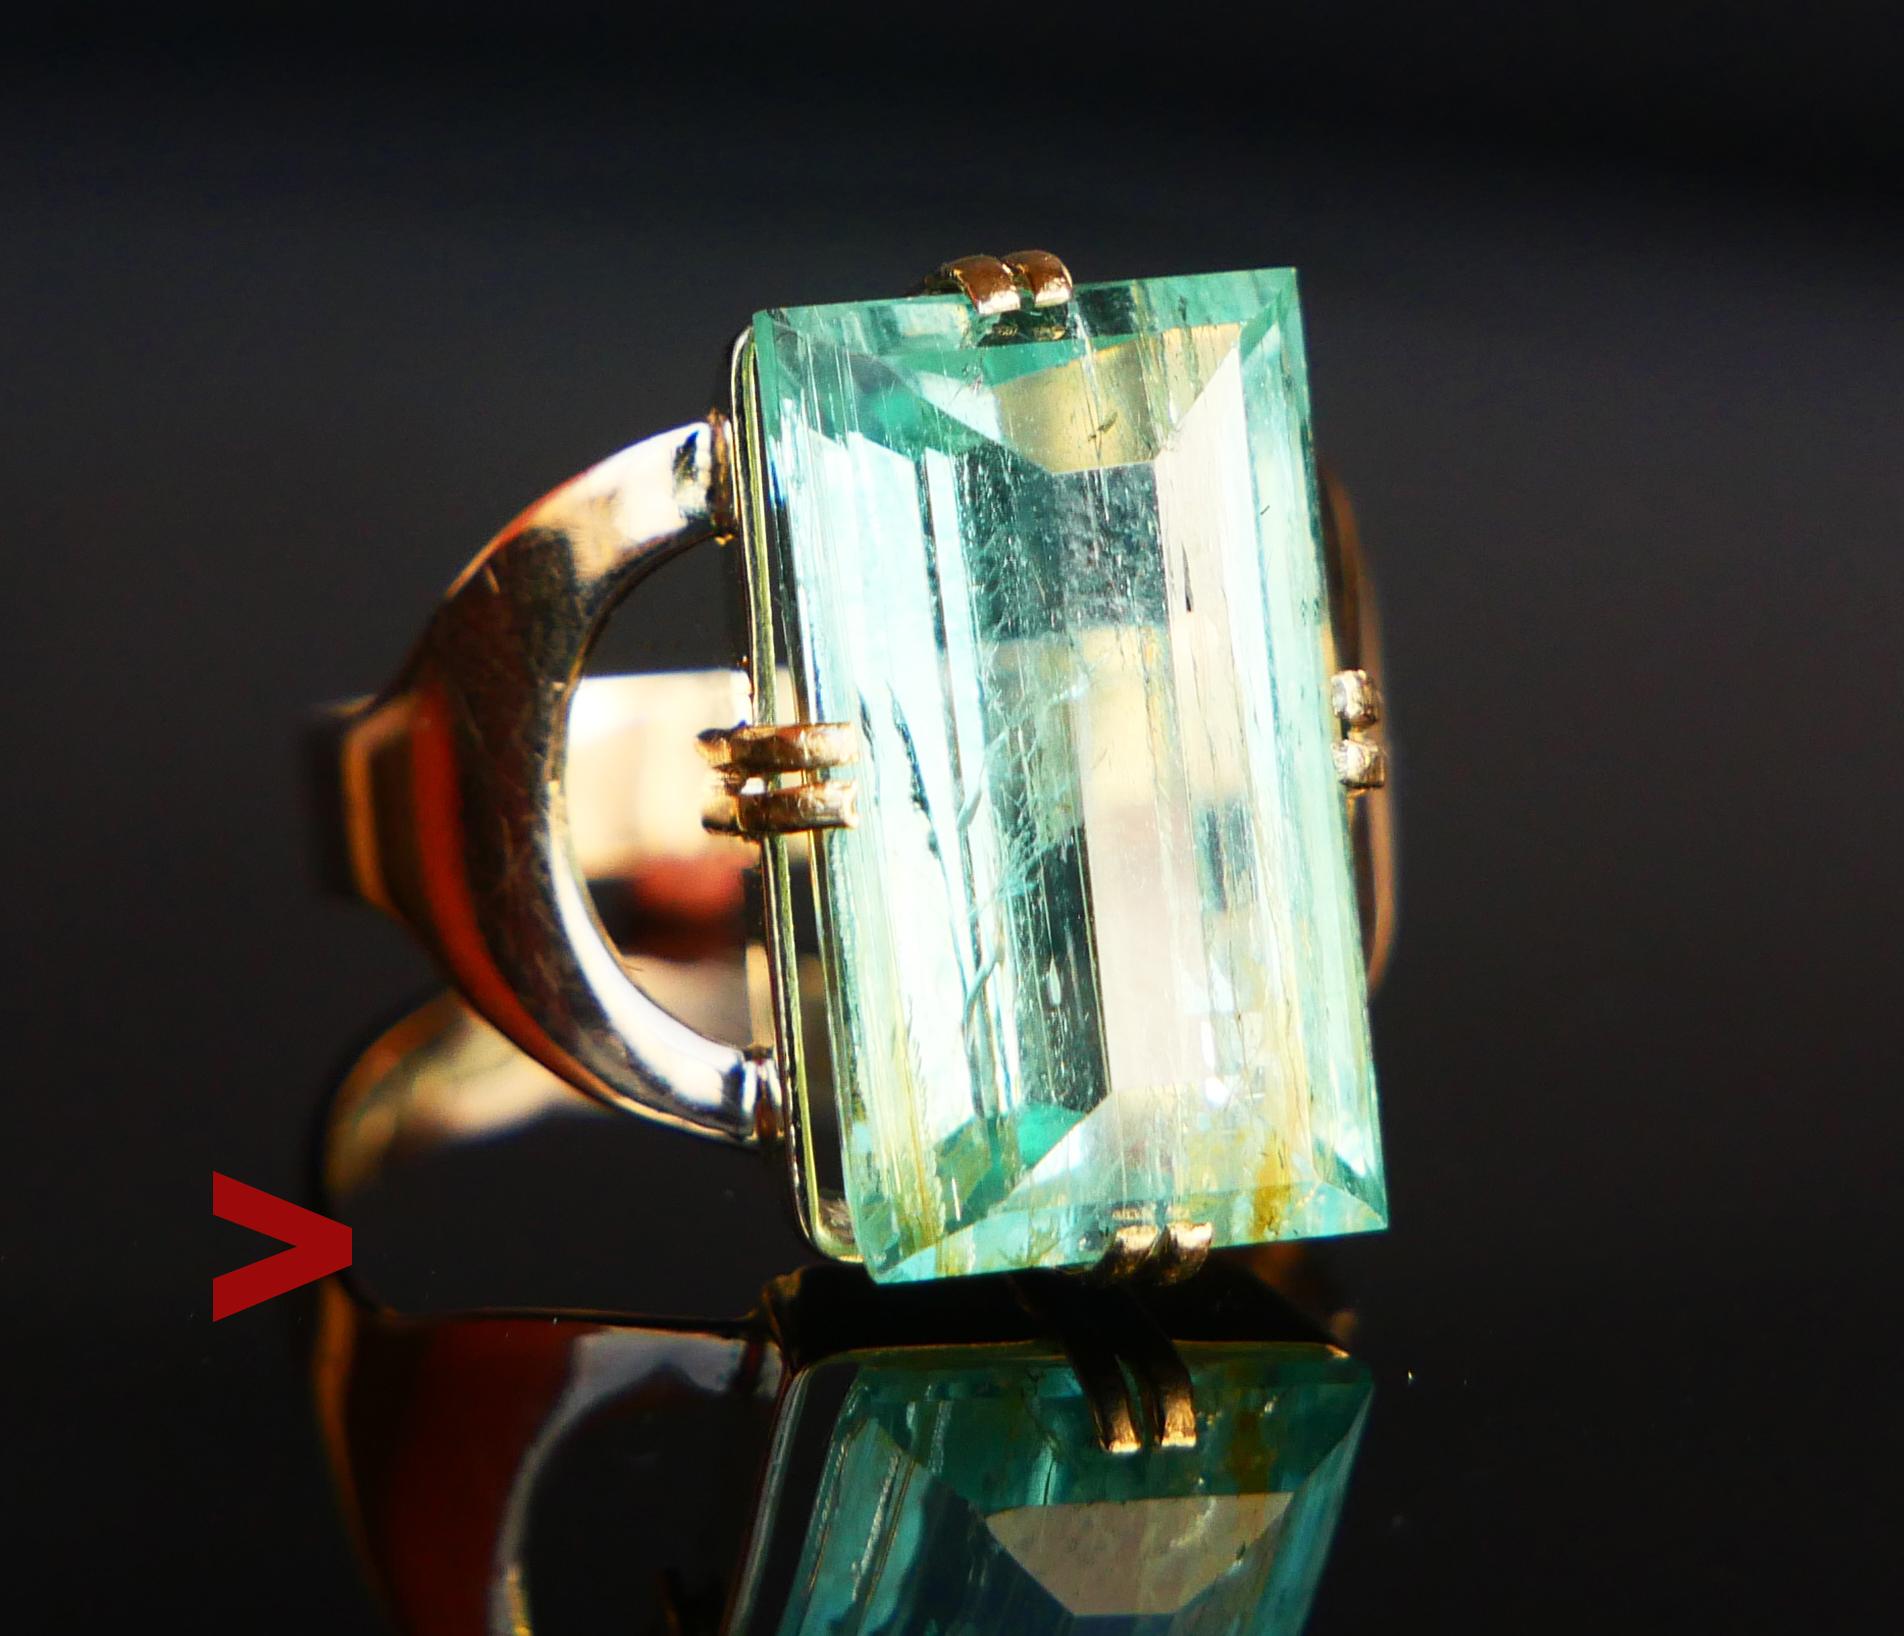 Vintage Finish Ring mit fantastischem natürlichen grünen Smaragdschliff 15 mm x 8,75 mm x 7 mm tief / ca. 7,5 ct. Die Farbe ist Grün mit einem leichten Blaustich. Band und Krone aus massivem 14-karätigem Gelbgold mit einer Reihe von finnischen